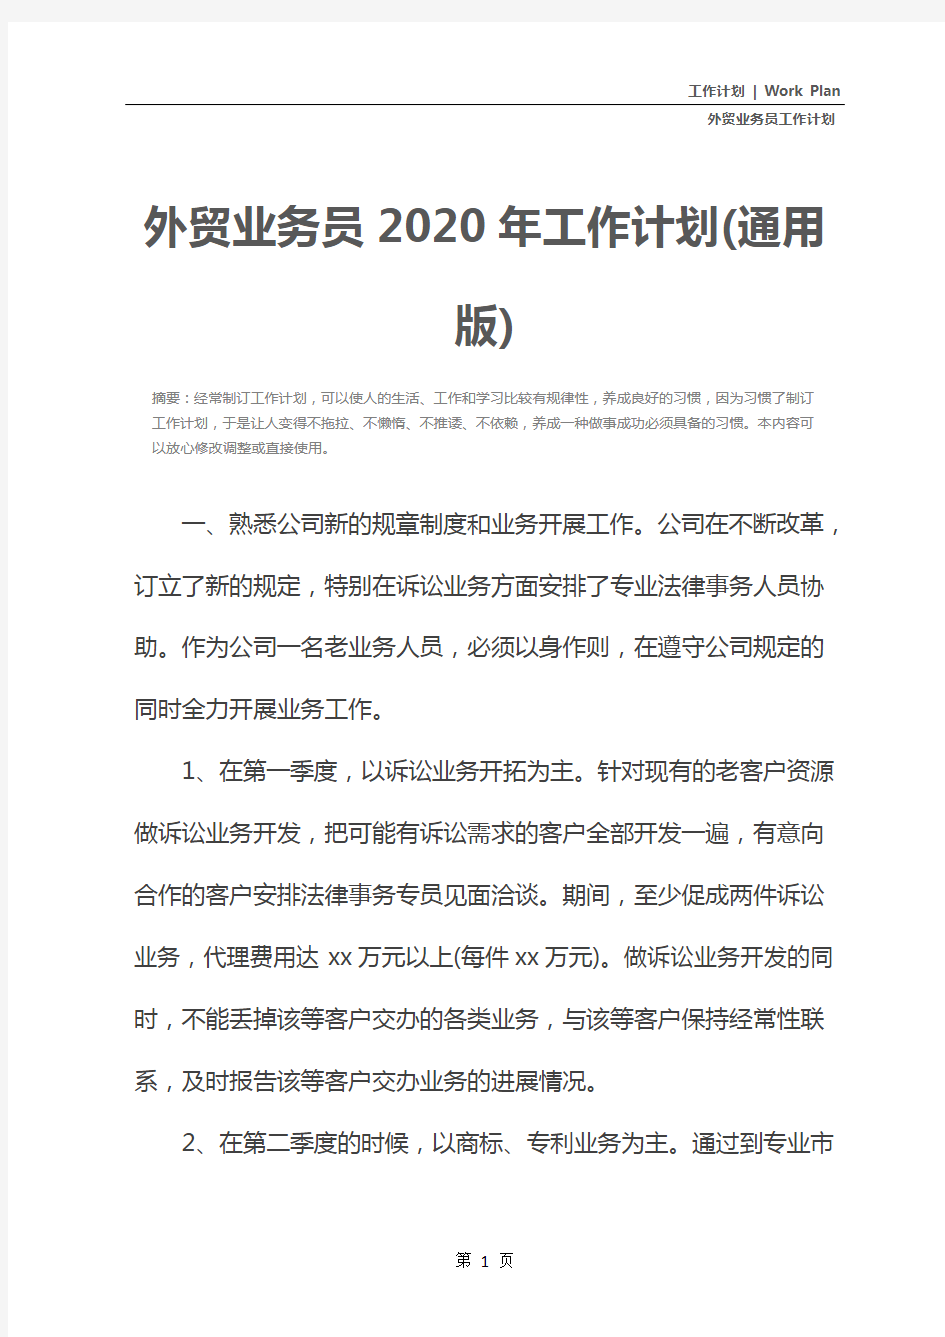 外贸业务员2020年工作计划(通用版)